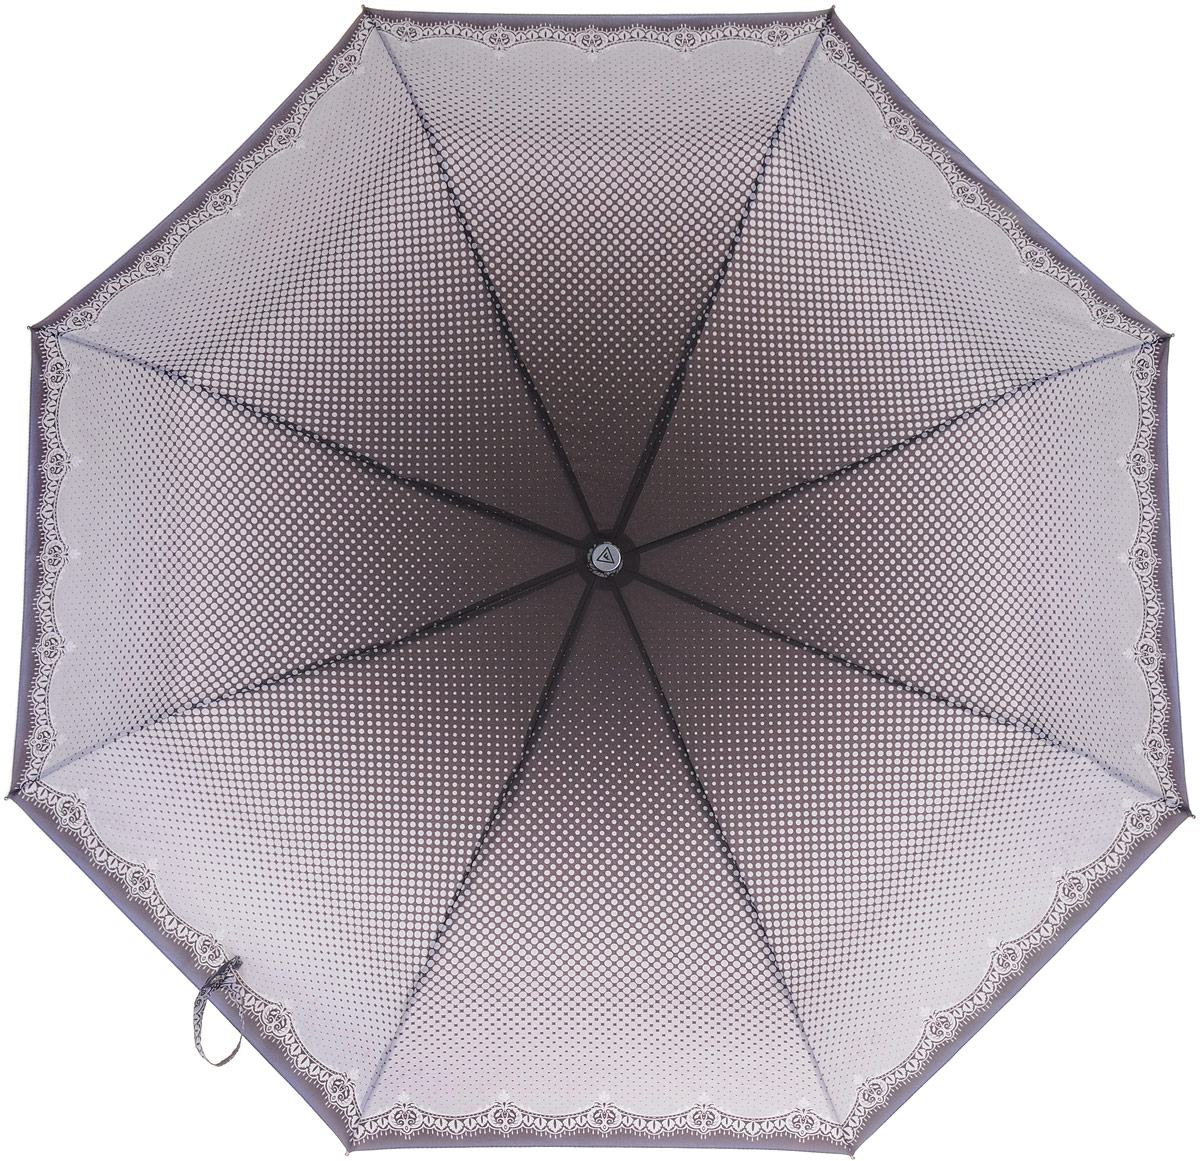 Зонт женский Fabretti, автомат, 3 сложения, цвет: светло-серый, фиолетовый. L-17104-6